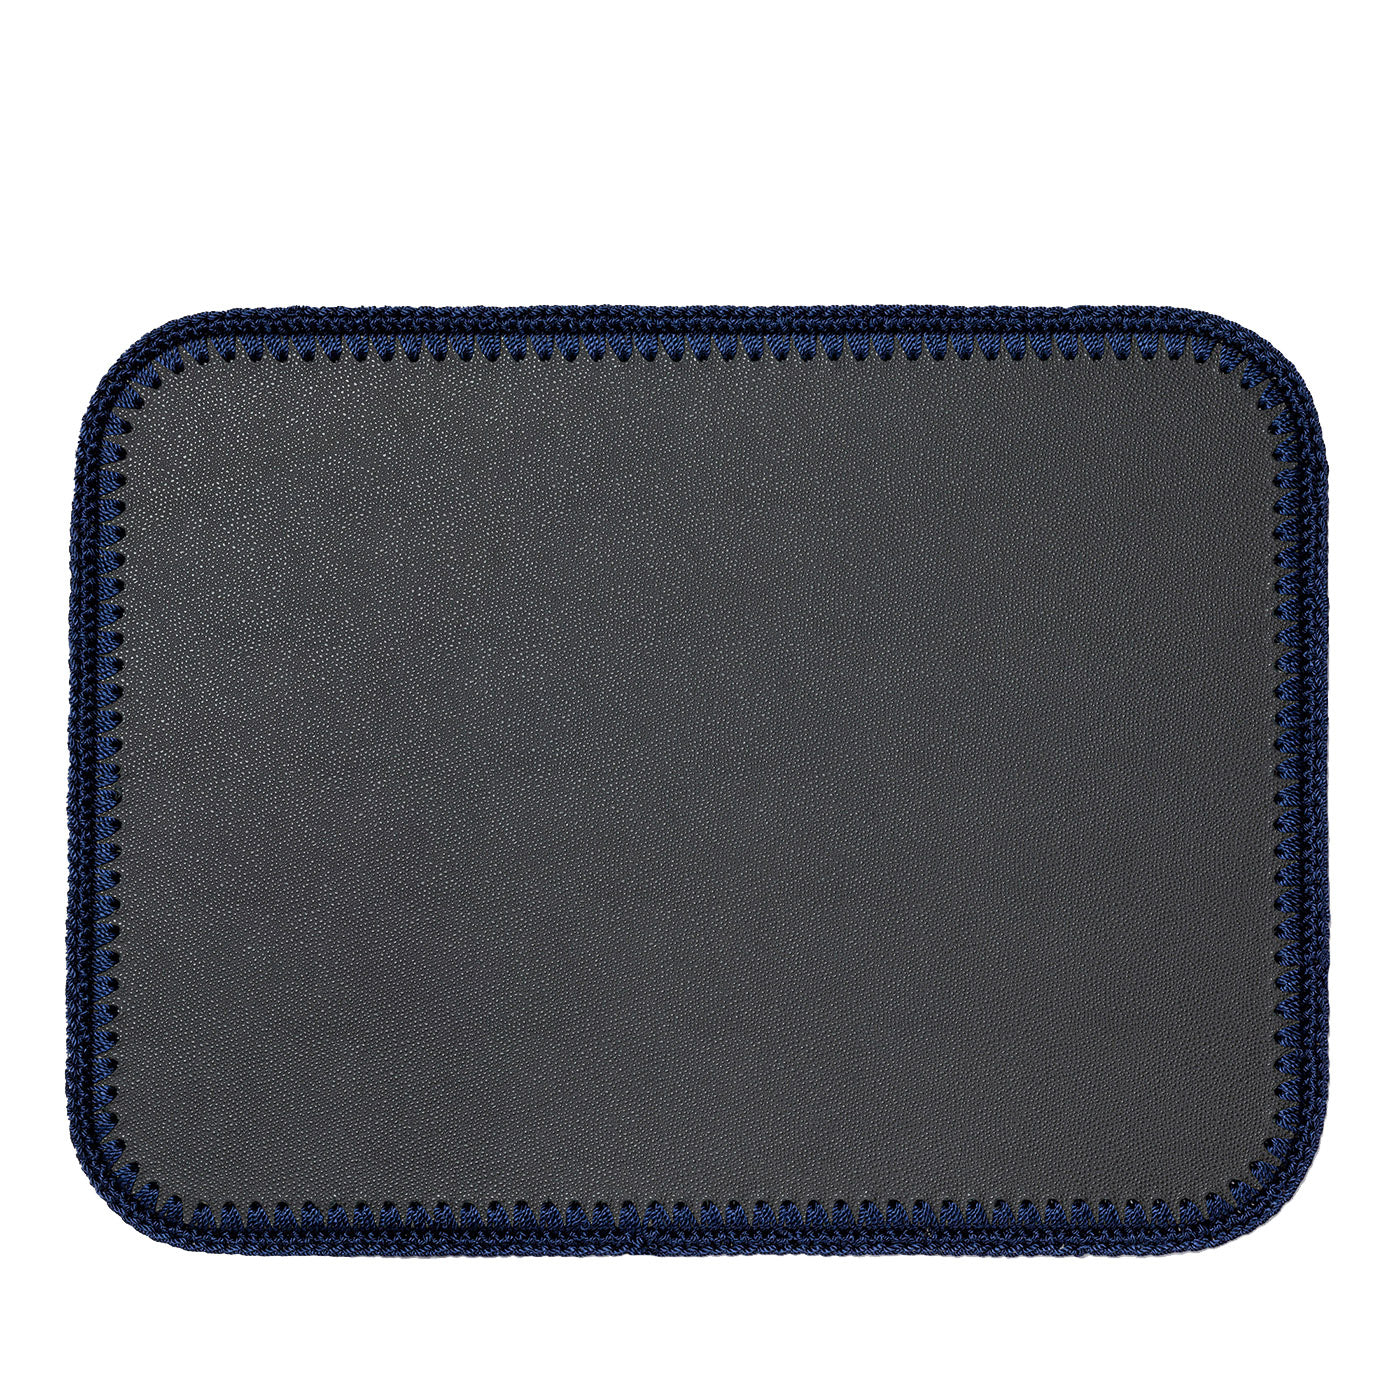 Rochelle - Sets de table rectangulaires en cuir et crochet - Gris et bleu #2 - Vue principale